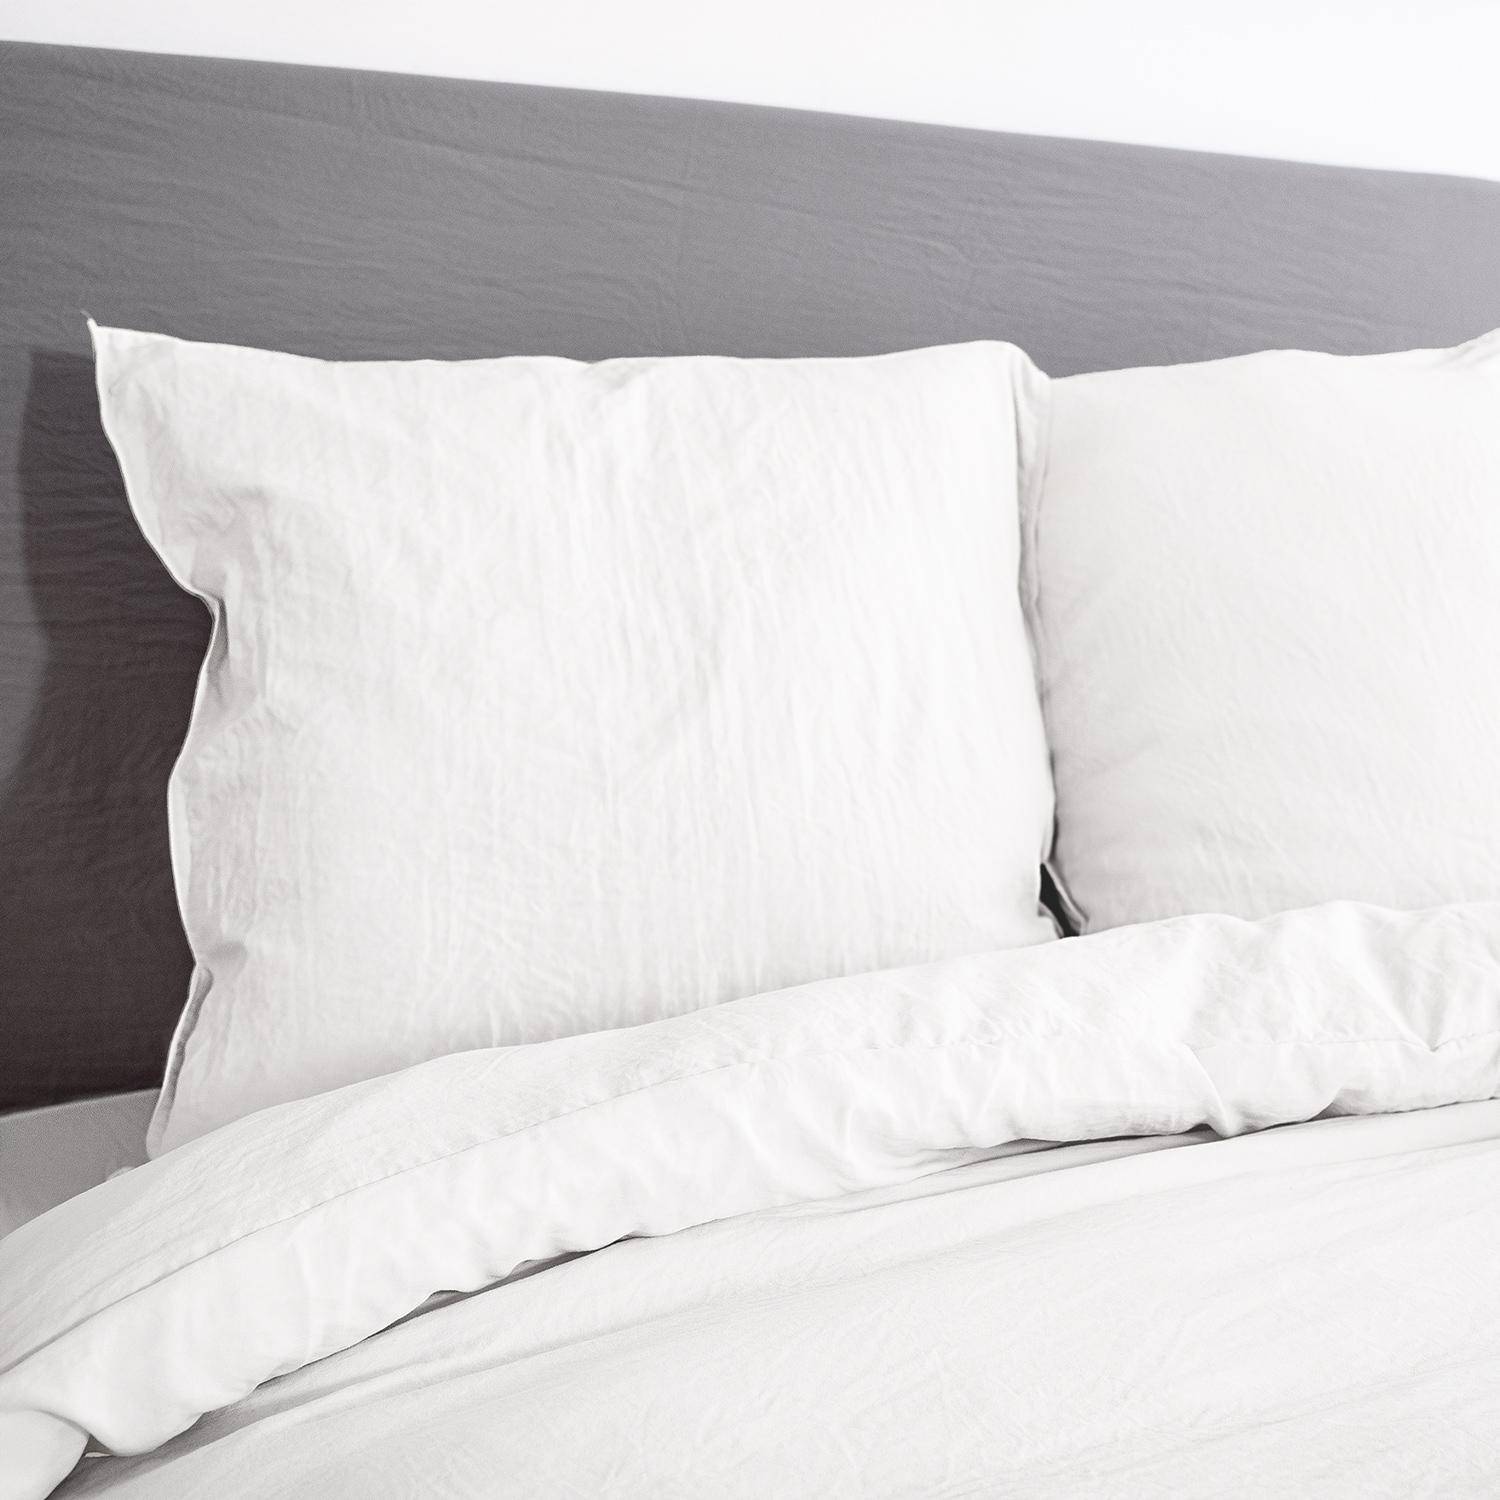 Bettwäsche-Set aus vorgewaschener Mikrofaser in weiß 260 x 240 cm für Doppelbetten, 1 Bettbezug und 2 Kissenbezüge,sweeek,Photo2